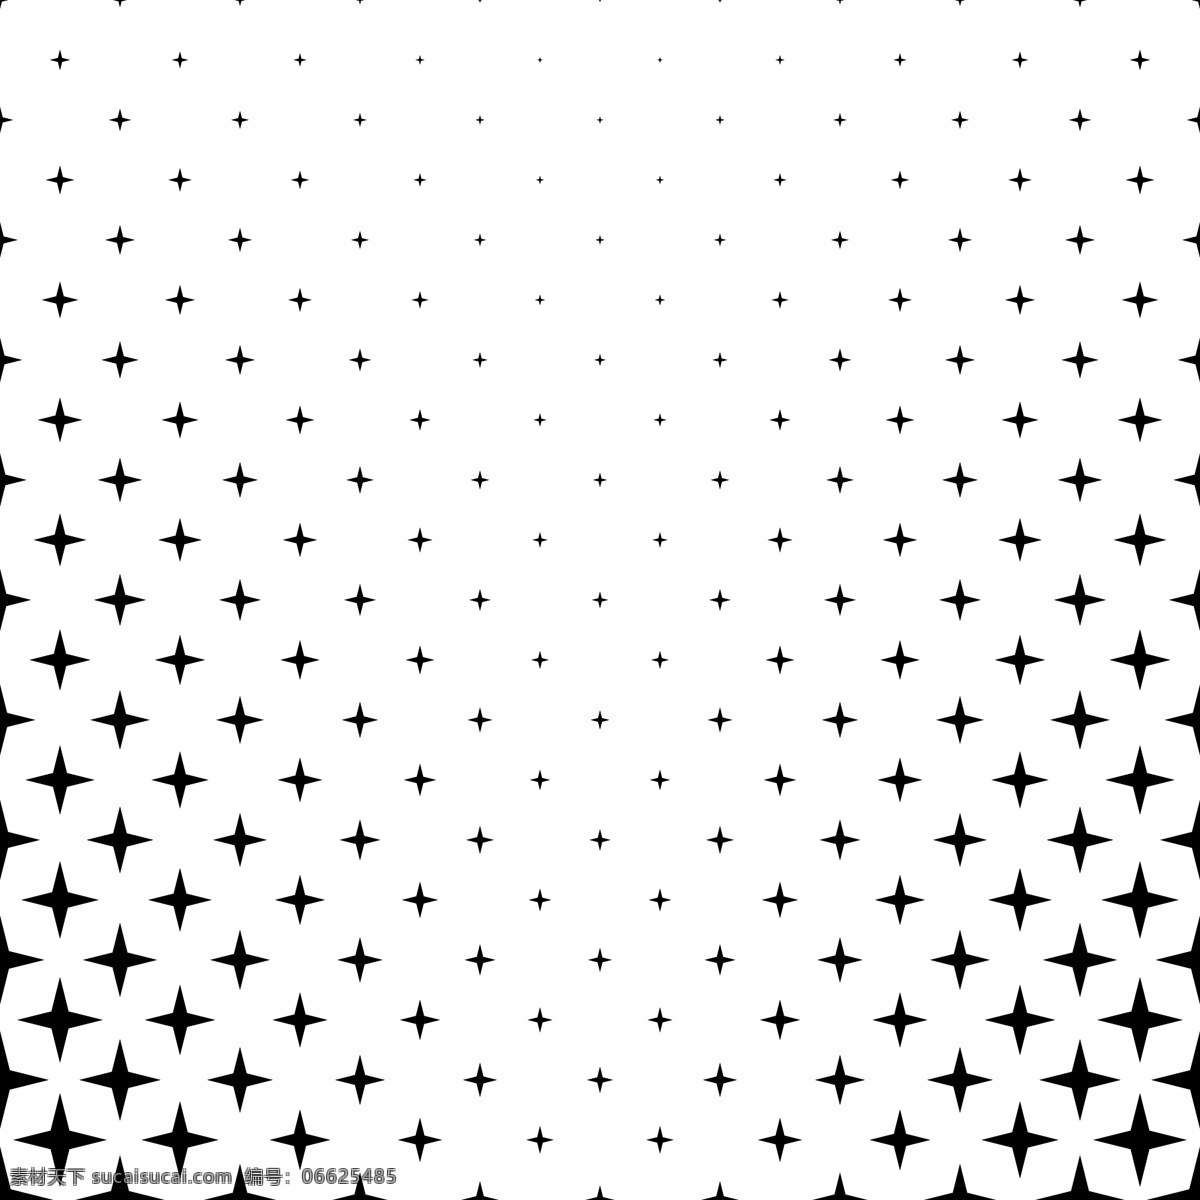 黑白星型 背景 图案 小册子 抽象背景 海报 抽象 封面 明星 模板 几何 宣传册模板 黑色背景 布局 墙纸 几何图案 黑色 网络 演示 图形 几何背景